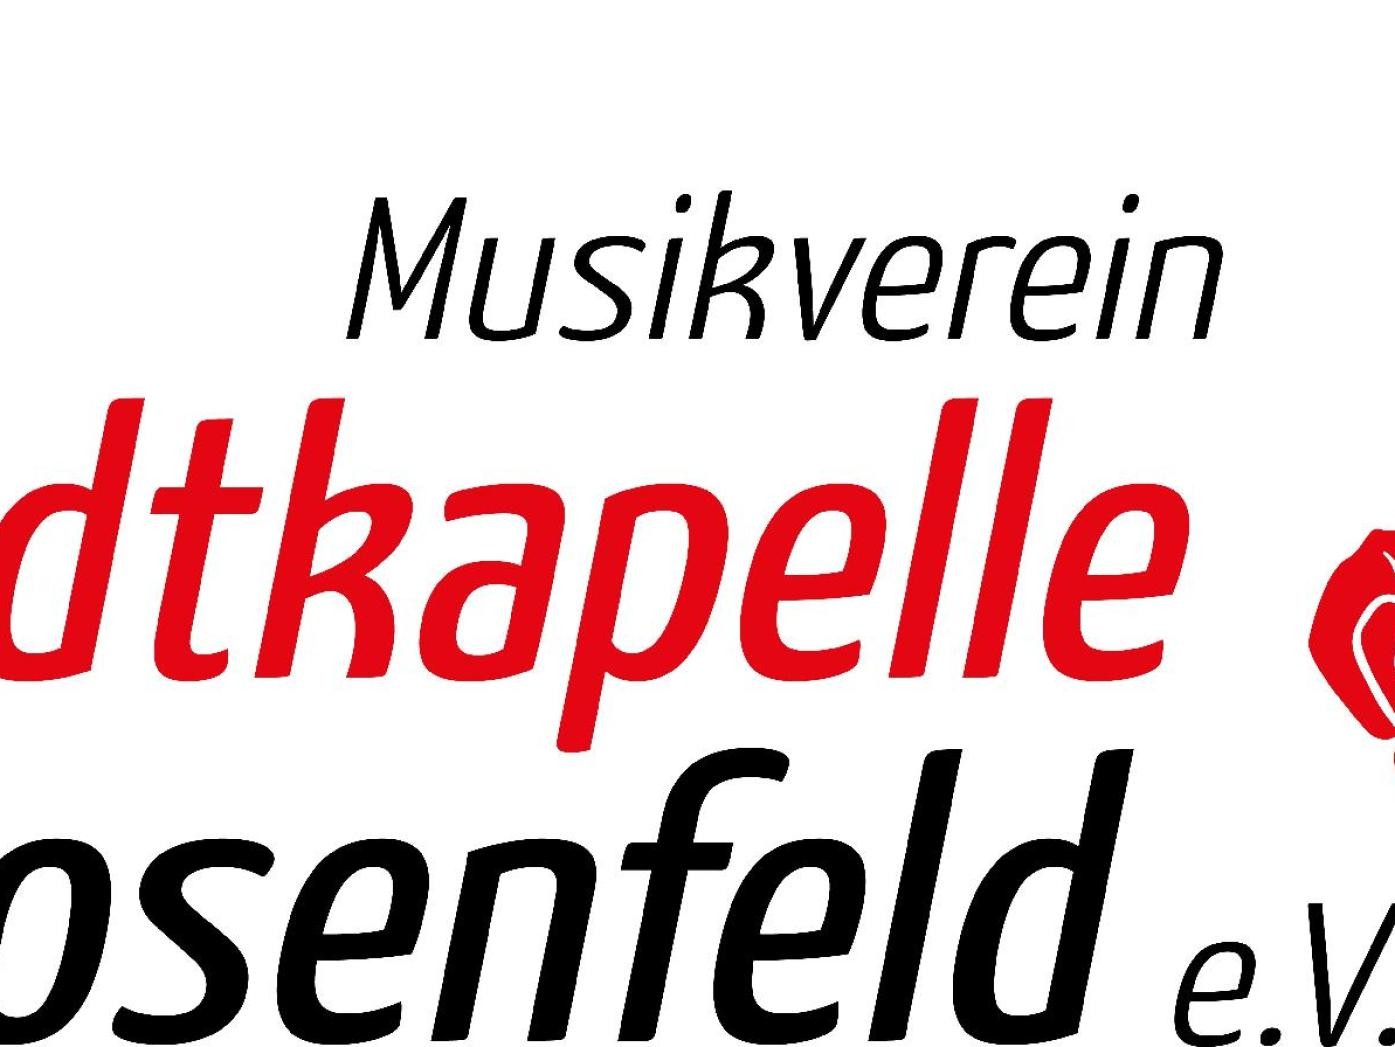 Logo Musikverein Stadtkapelle Rosenfeld e. V., links Schrift in schwarz Musikverein darunter Schrift in rot Stadtkapelle darunter Schrift schwarz Rosenfeld e.V. rechts daneben rote Note